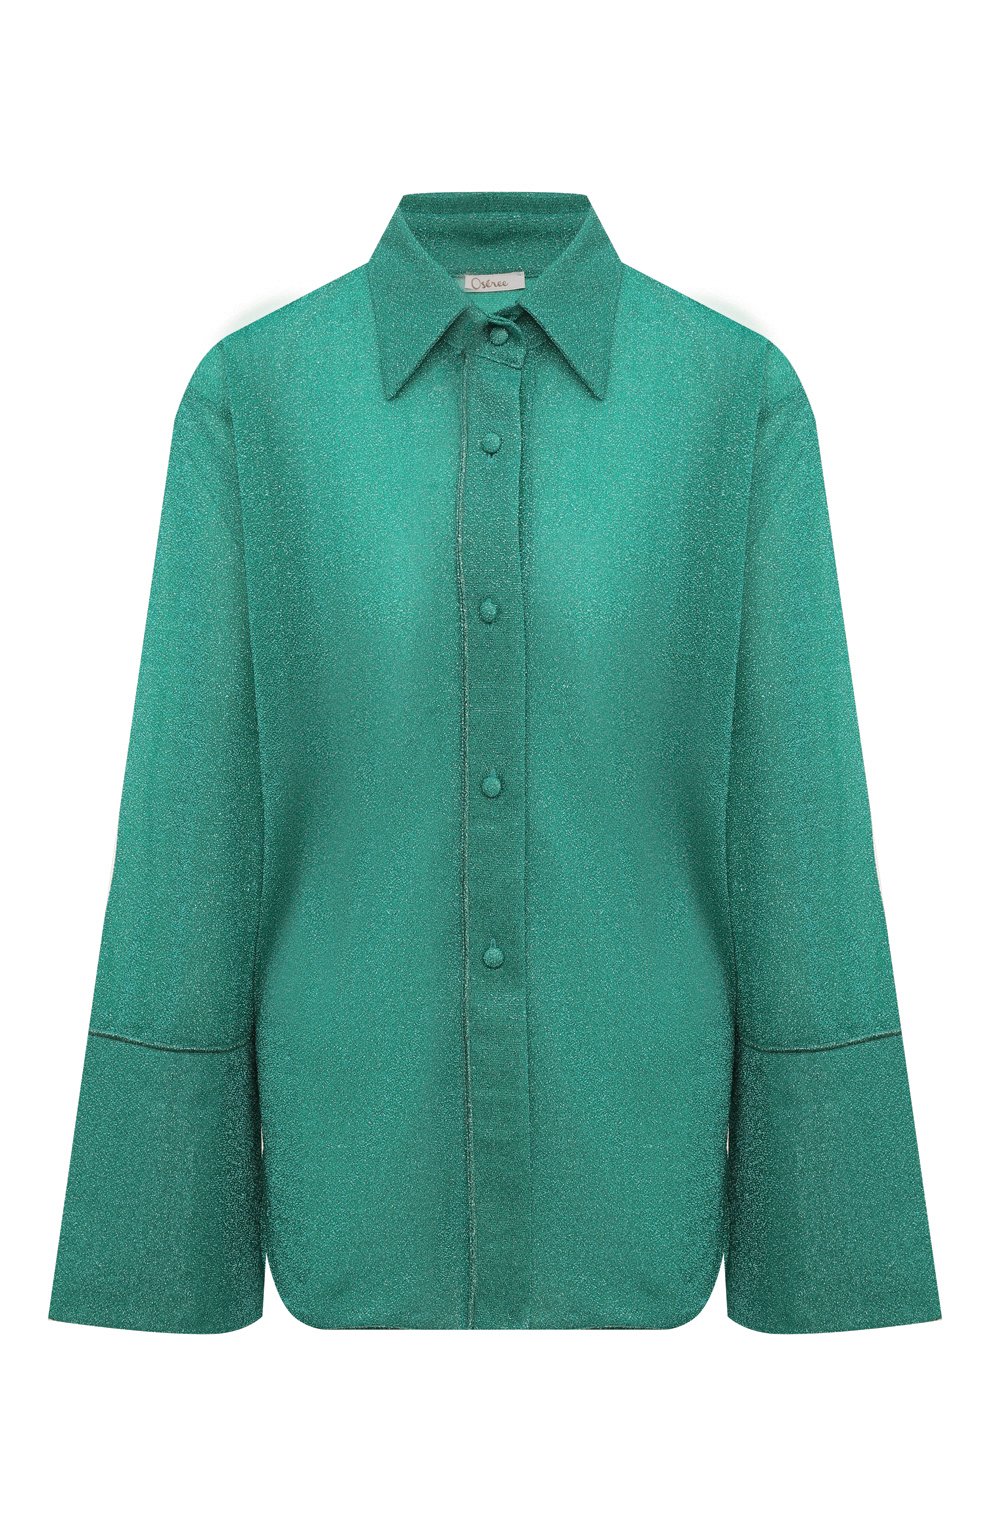 Женская бирюзовая рубашка OSEREE купить в интернет-магазине ЦУМ, арт. LSF235